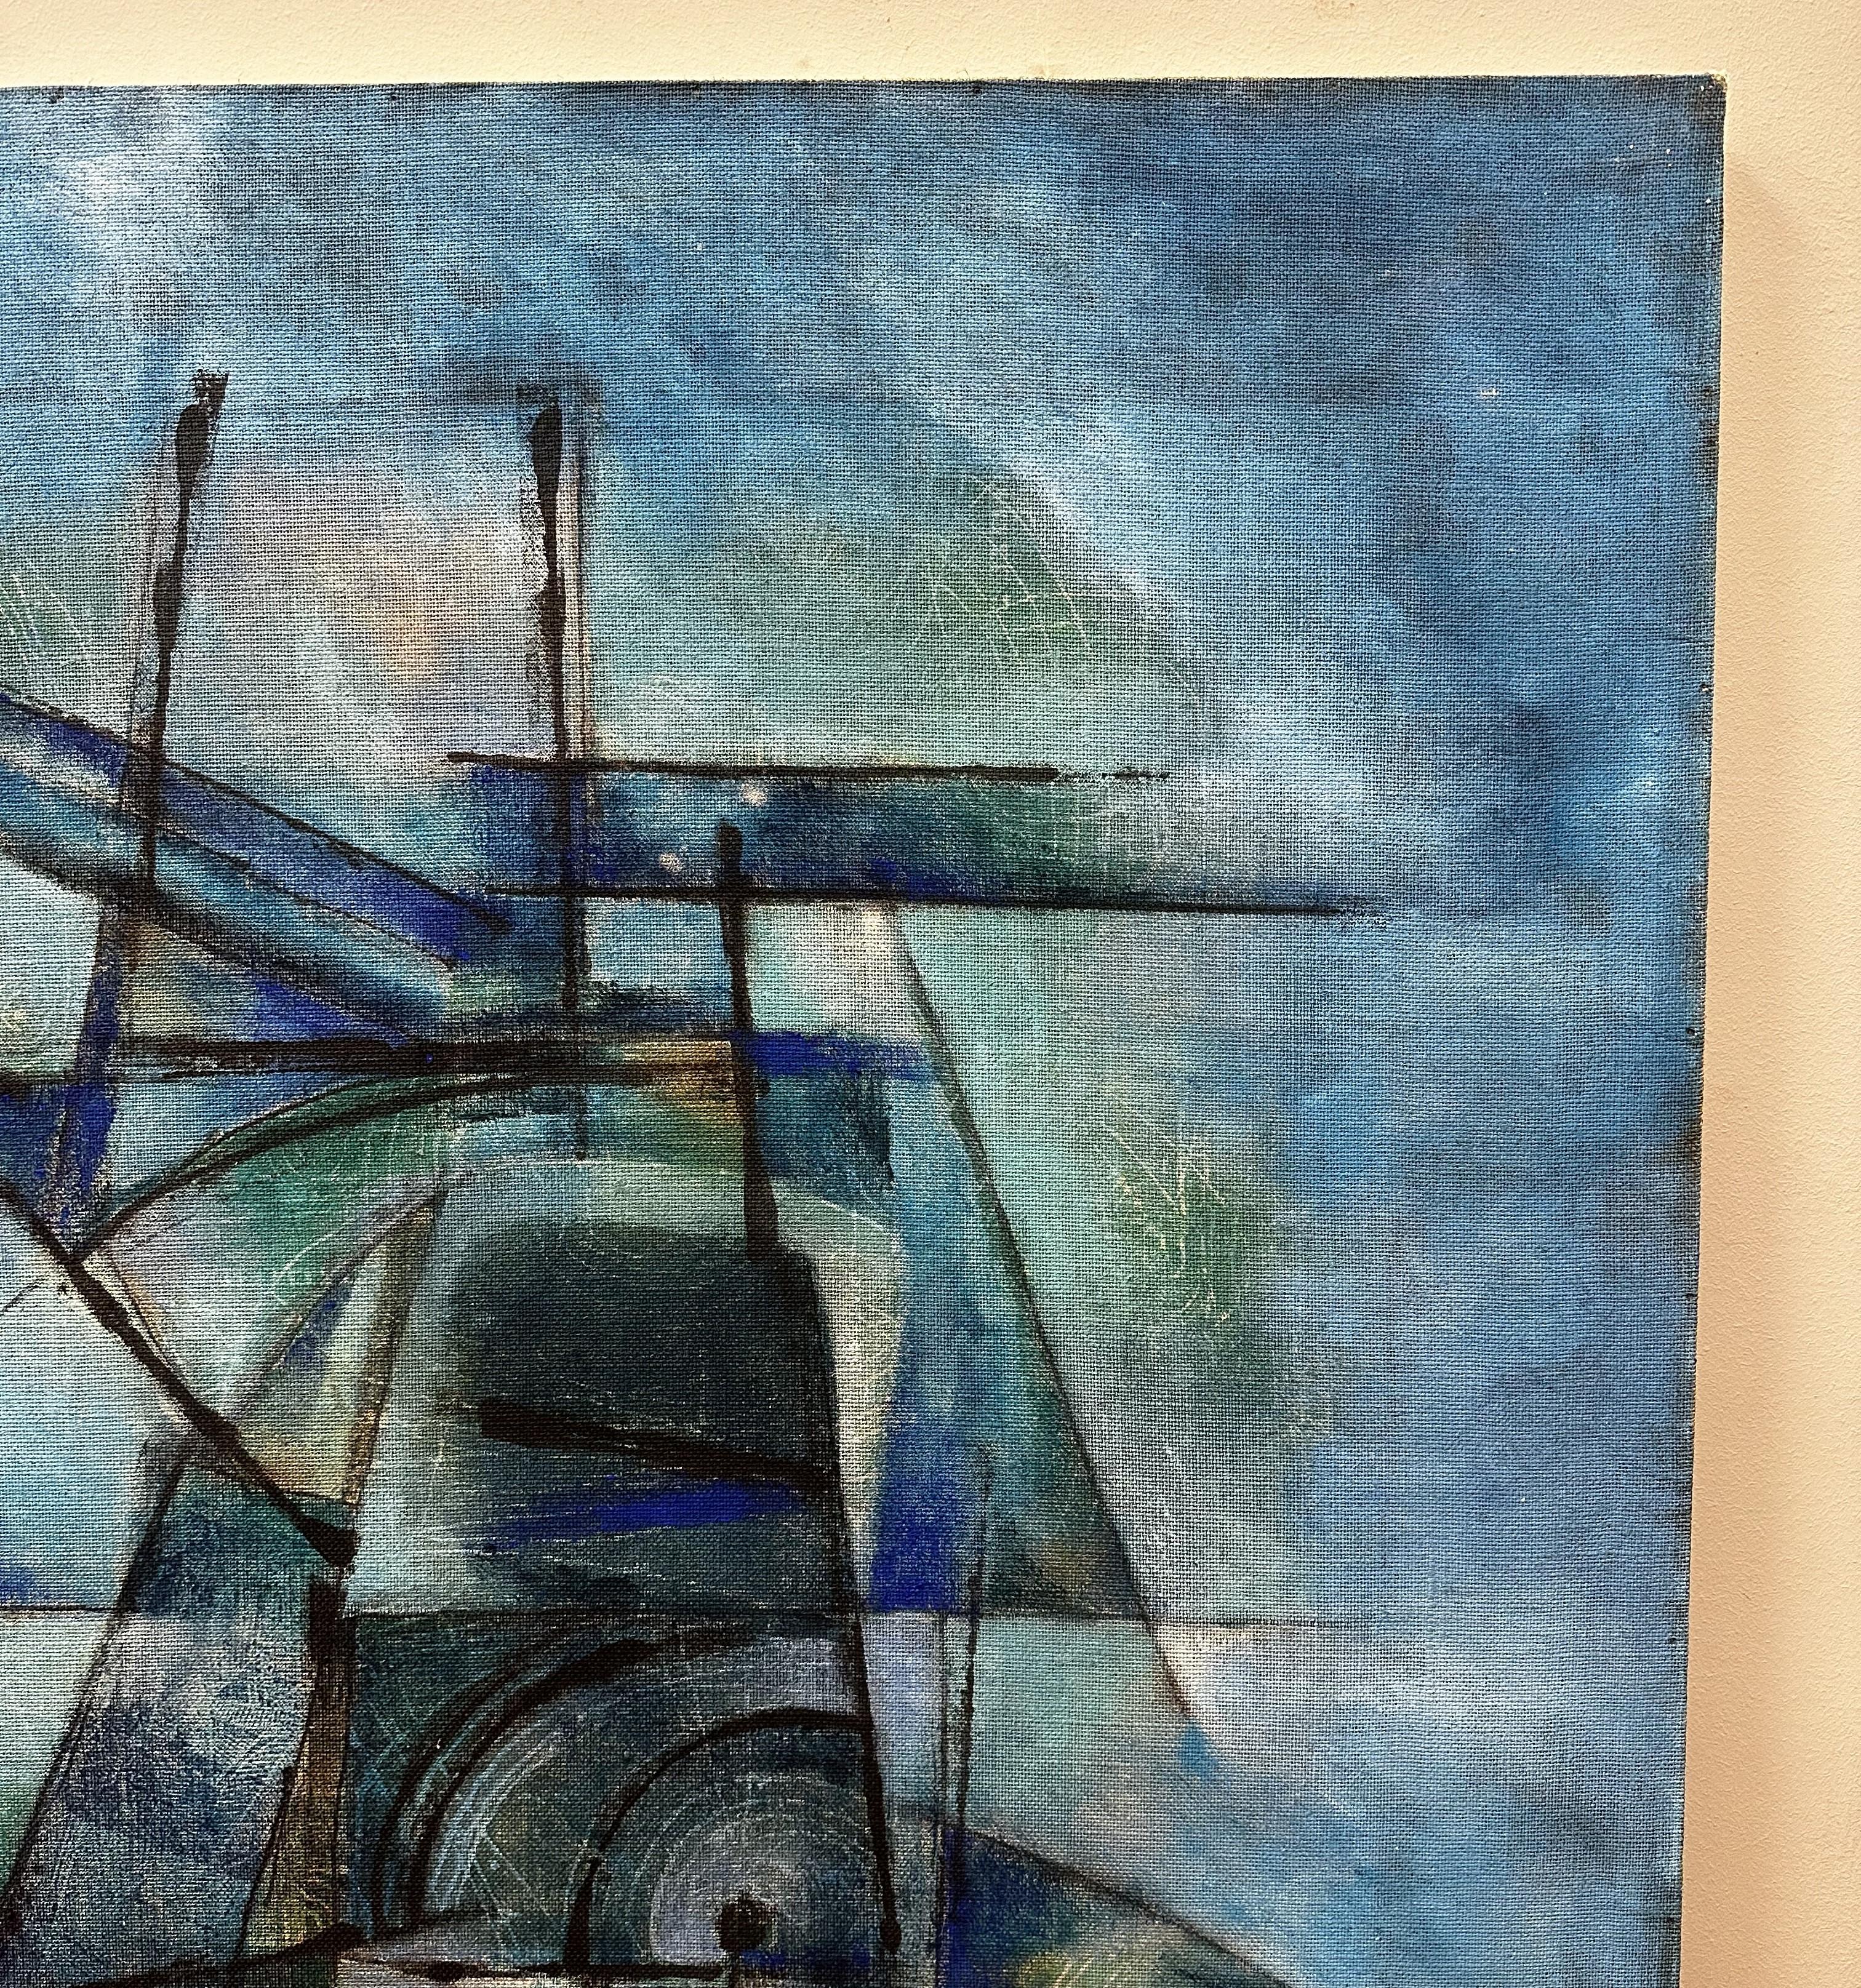 Außergewöhnliches Öl auf Leinwand von dem französischen Maler Serge Arnoux (1933-2014). Dieses absolut moderne Werk zeichnet sich durch die intensive blaue Farbe des Hintergrunds aus, vor dem sich eine komplizierte abstrakte Komposition abhebt, in